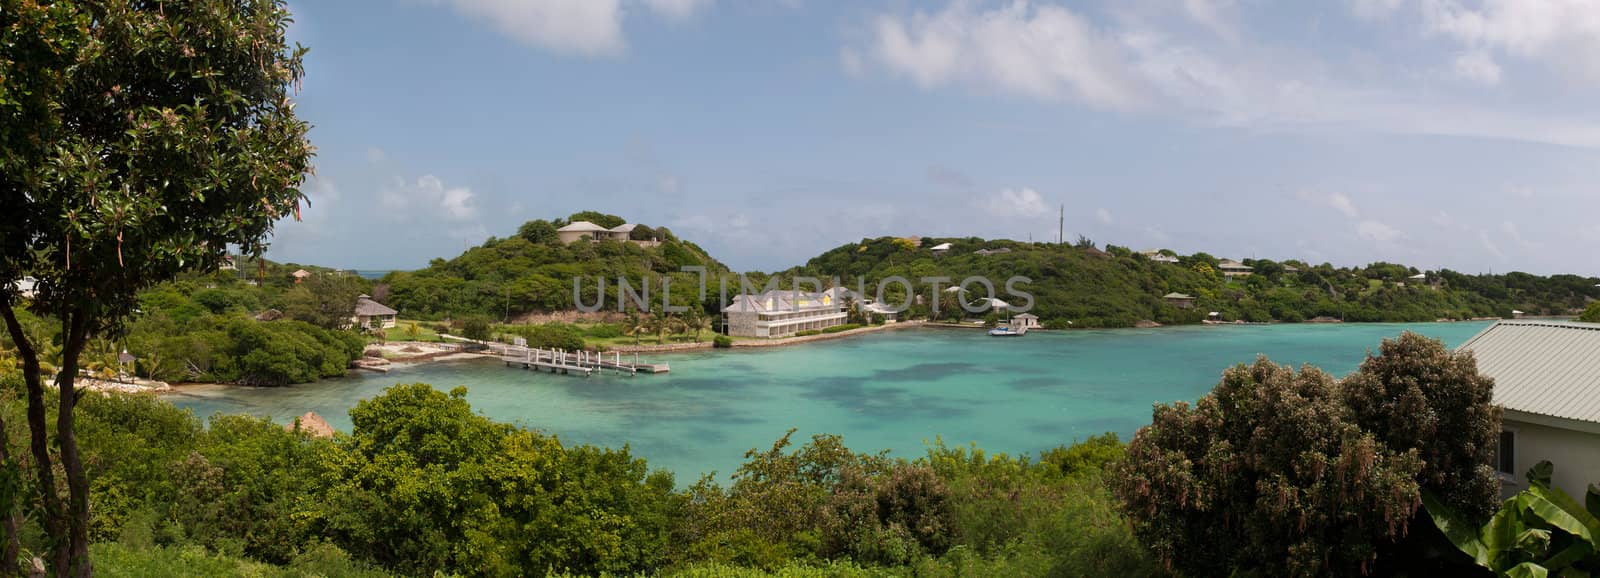 Antigua Long Bay by luissantos84